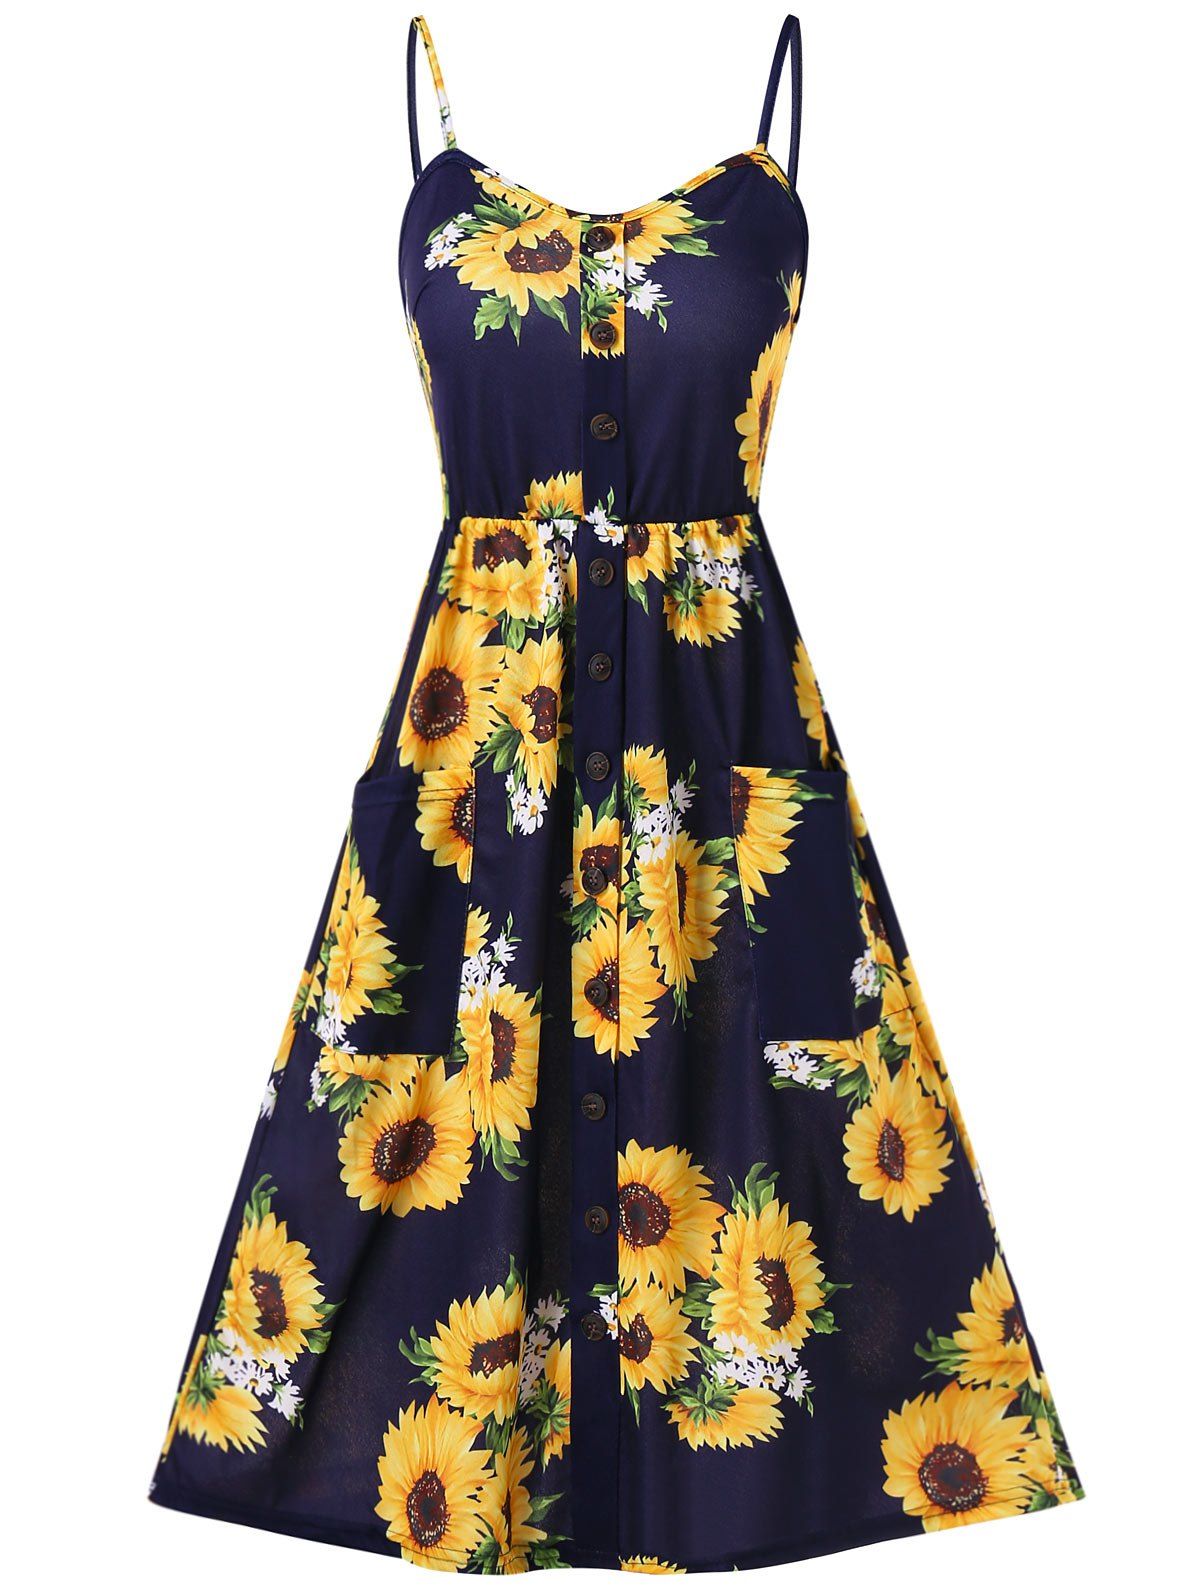 Vacation Sundress Sunflower Print Button Up Summer A Line Cami Dress - DEEP BLUE L